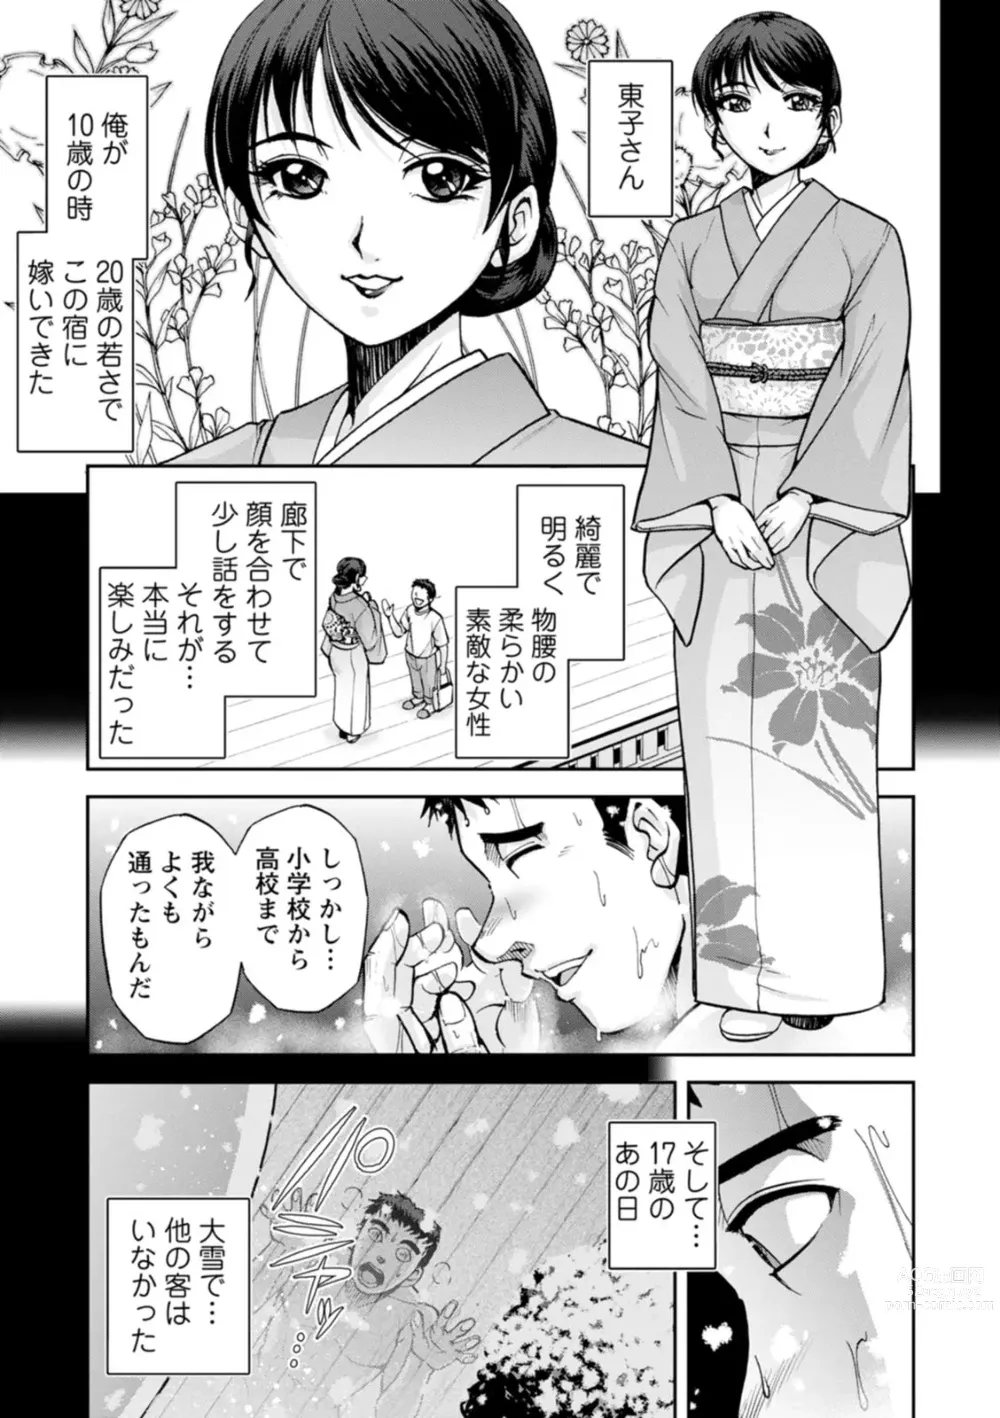 Page 11 of manga Okami no Touko-san - Miss. Touko, a Landlady of a Hot spring inn